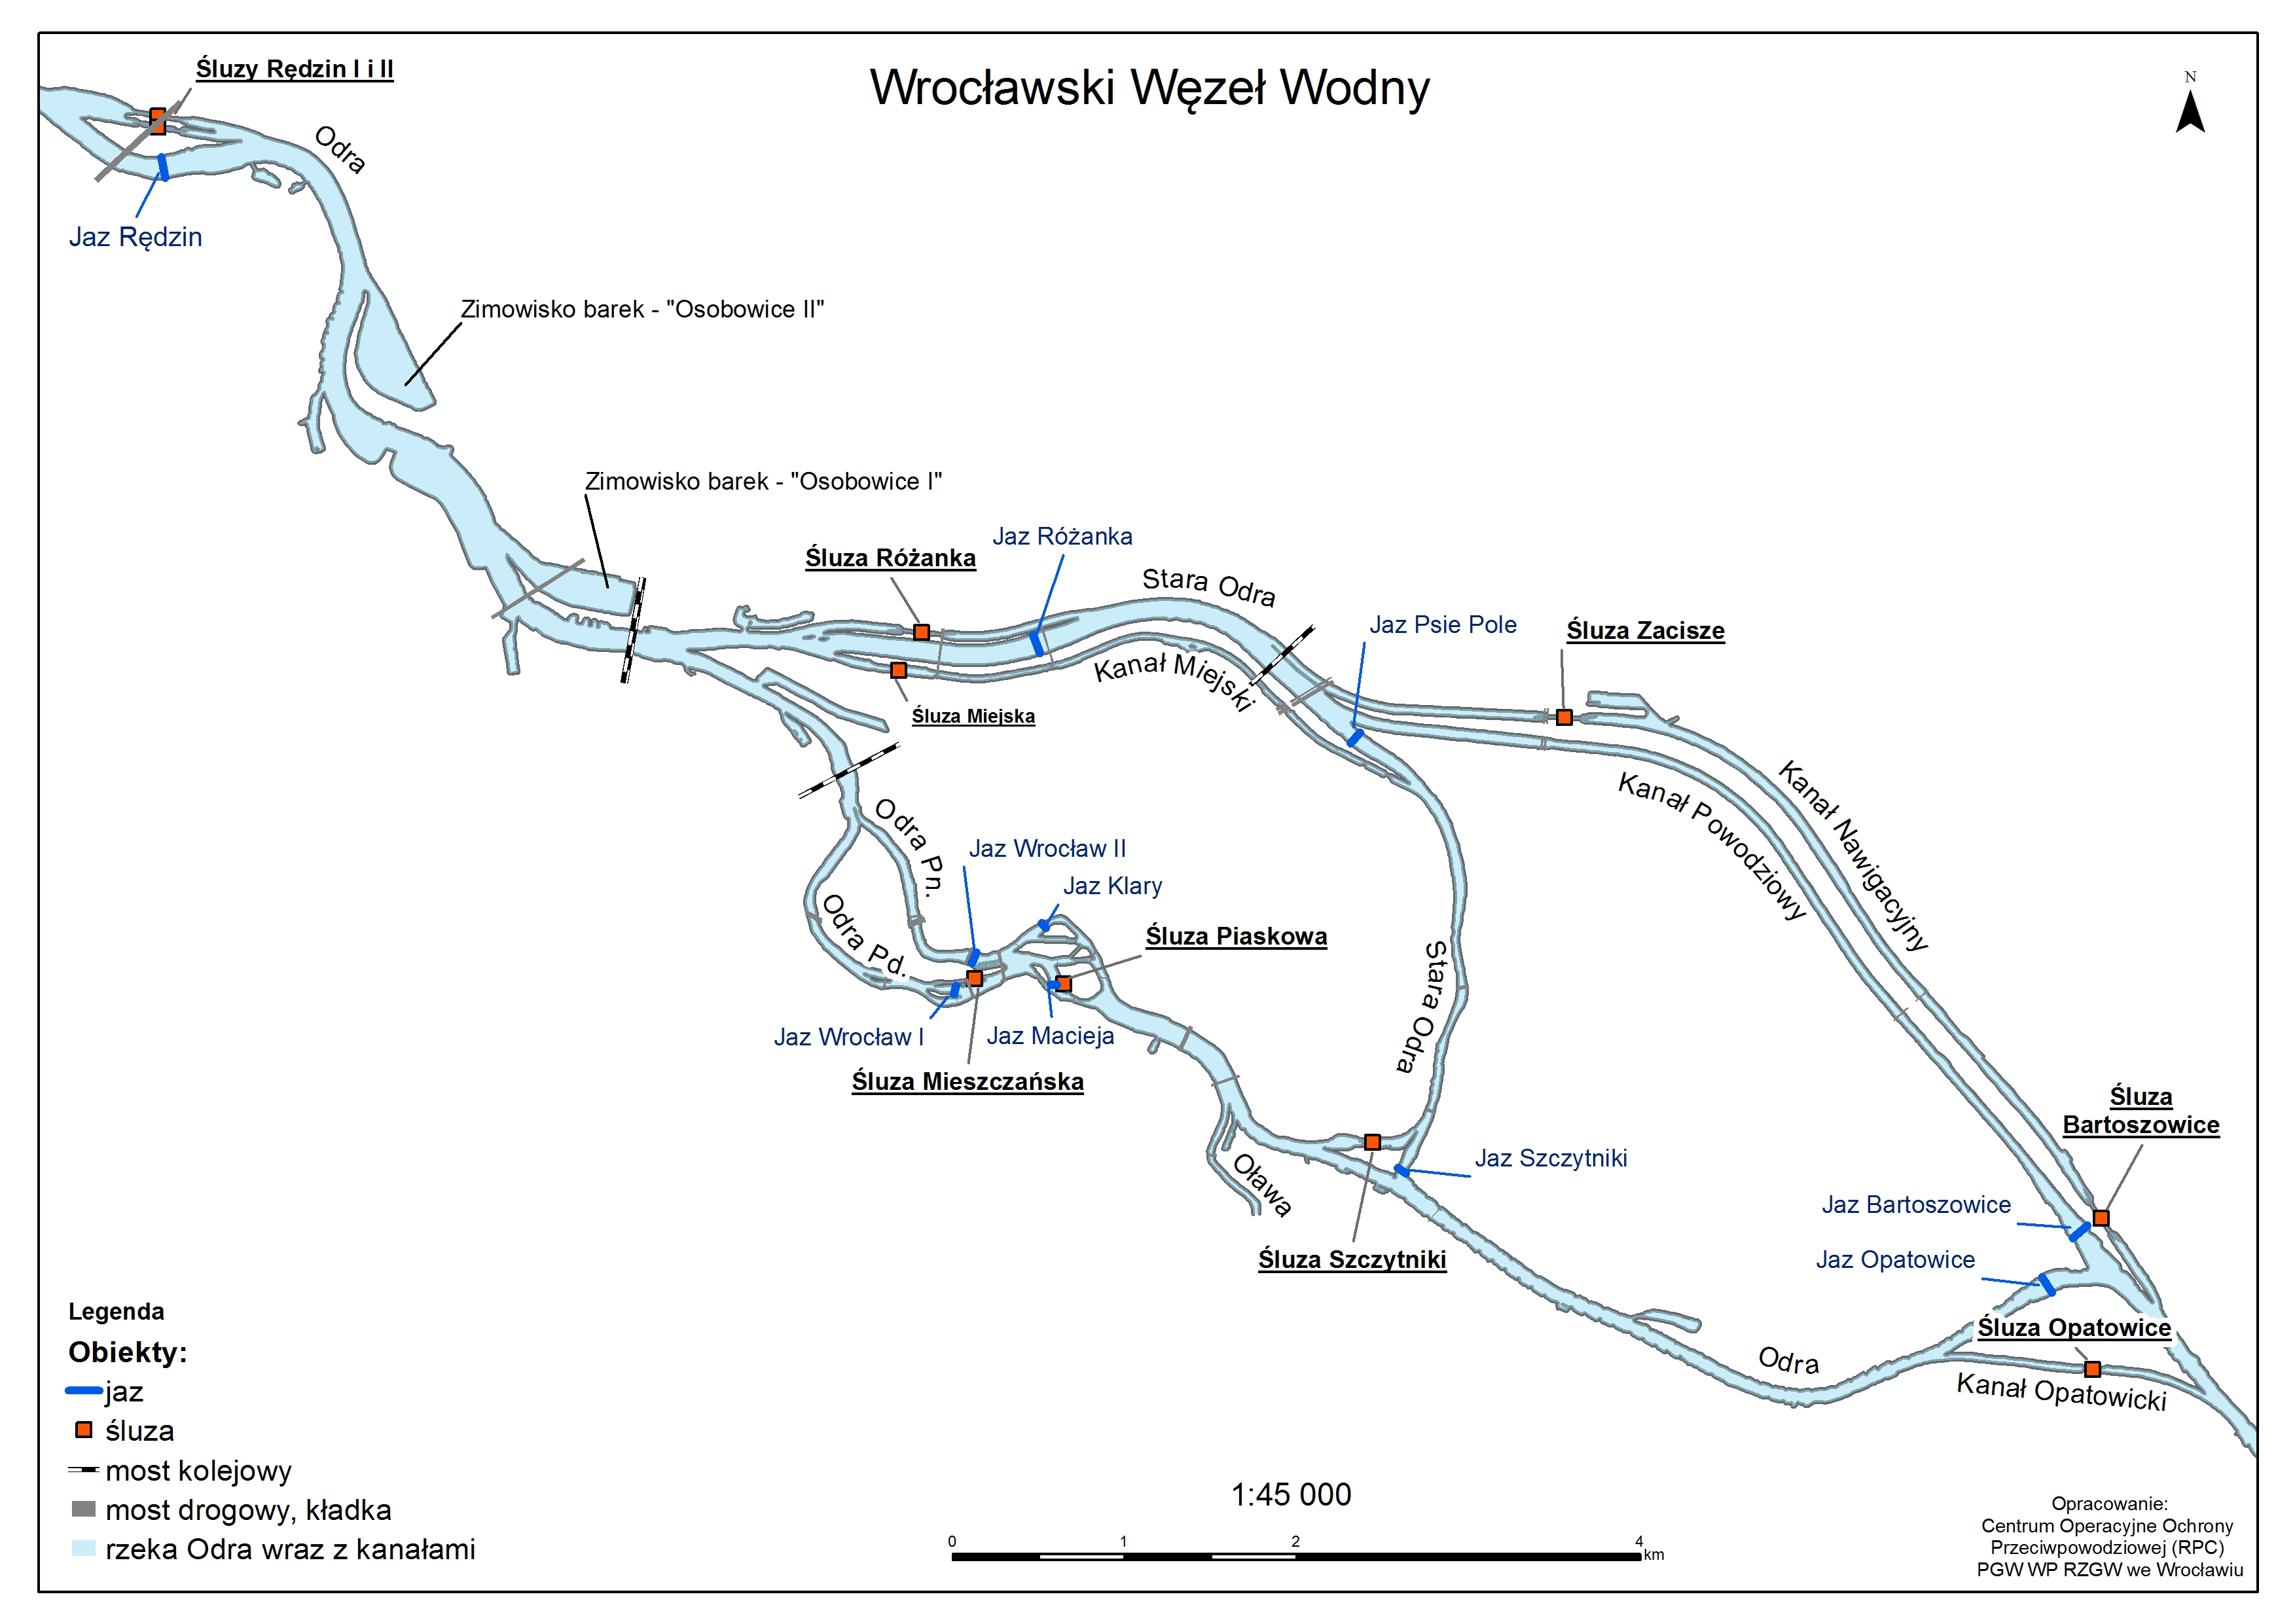 Wrocawski Wze Wodny Schemat A4 2019